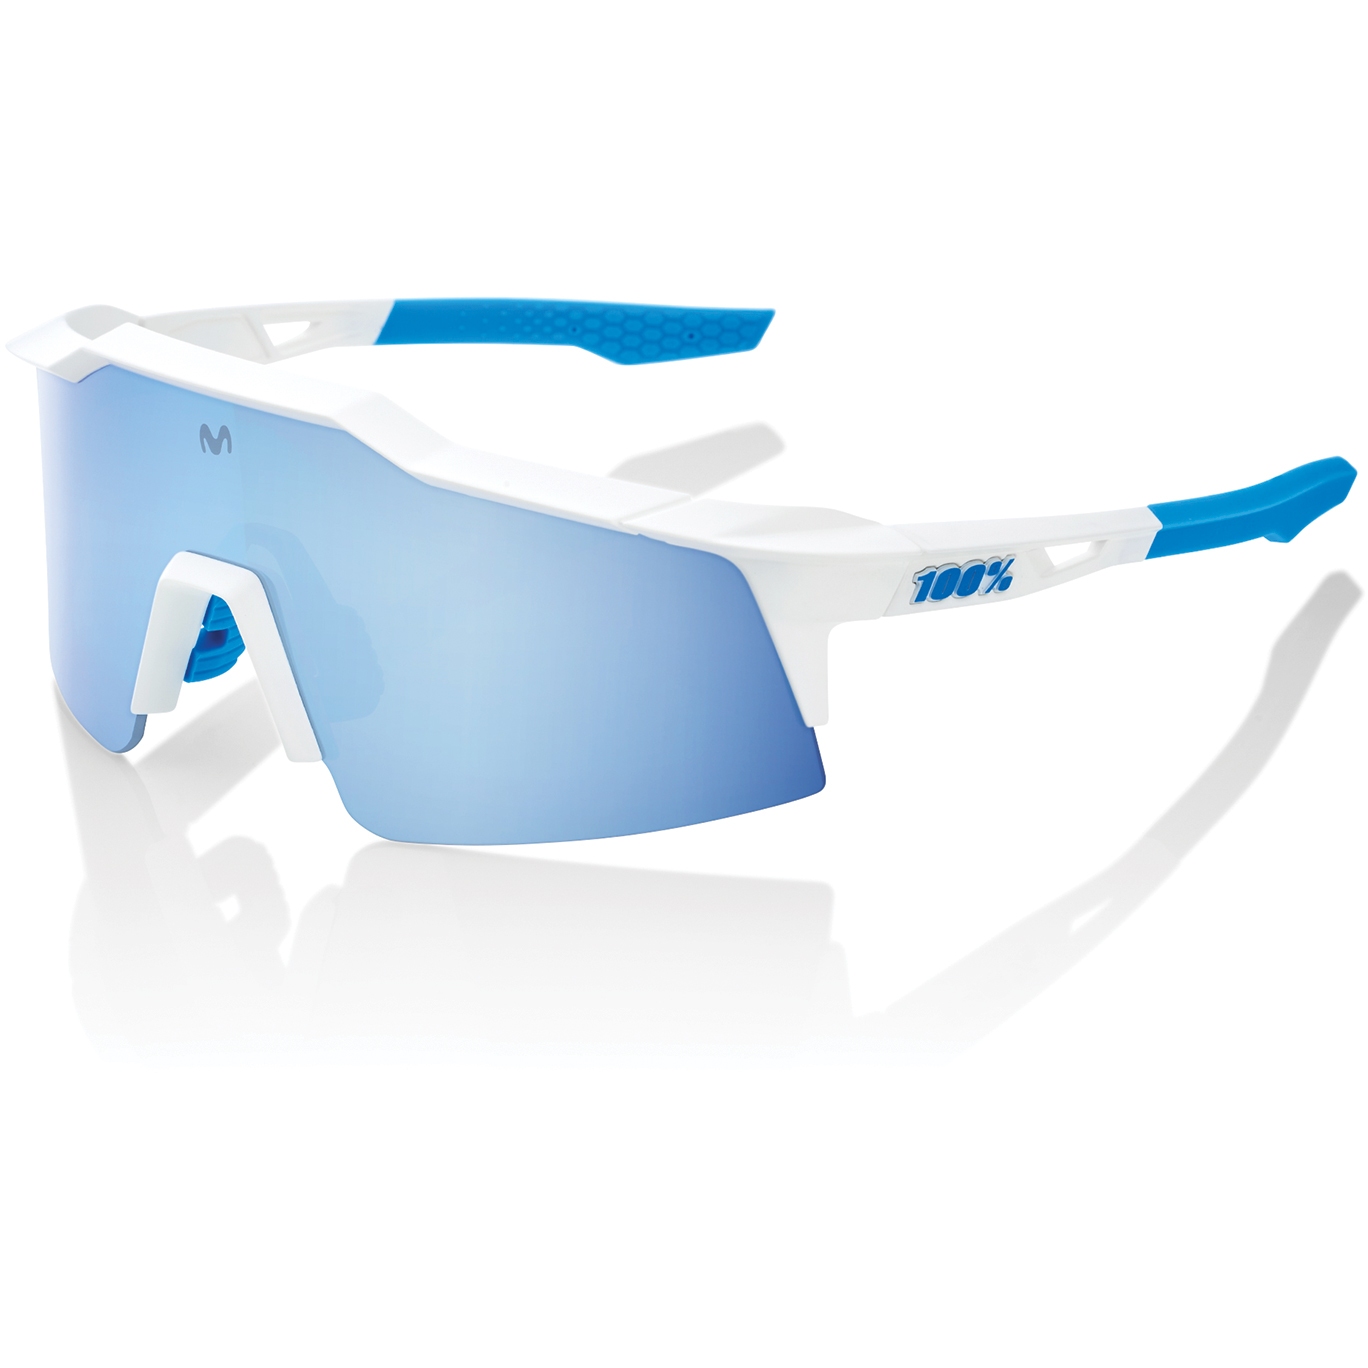 Produktbild von 100% Speedcraft SL Movistar Brille - HiPER Mirror Lens - Team White / Blue Multilayer + Clear